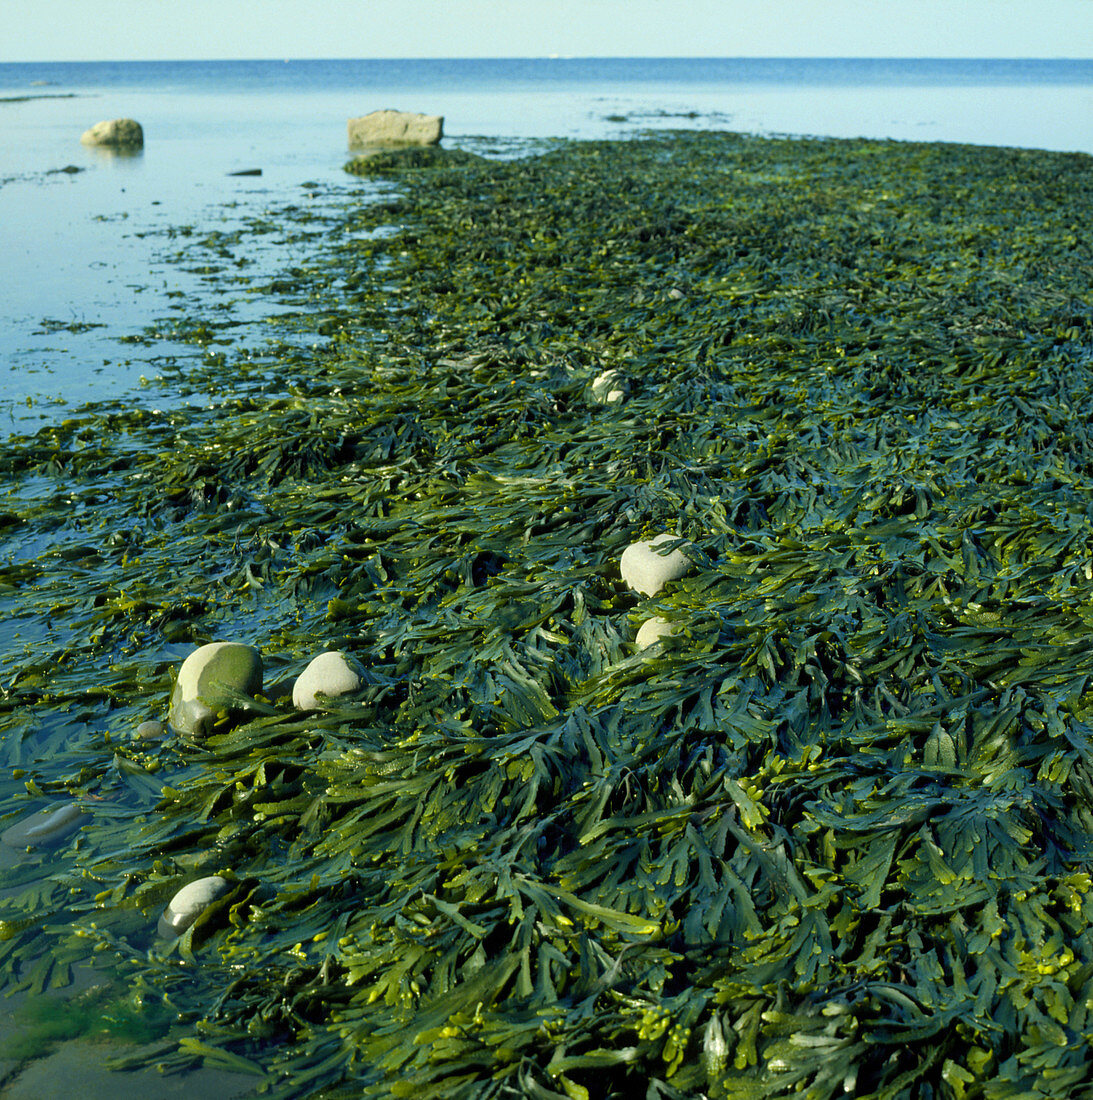 Bladder wrack seaweed Fucus vesiculosus